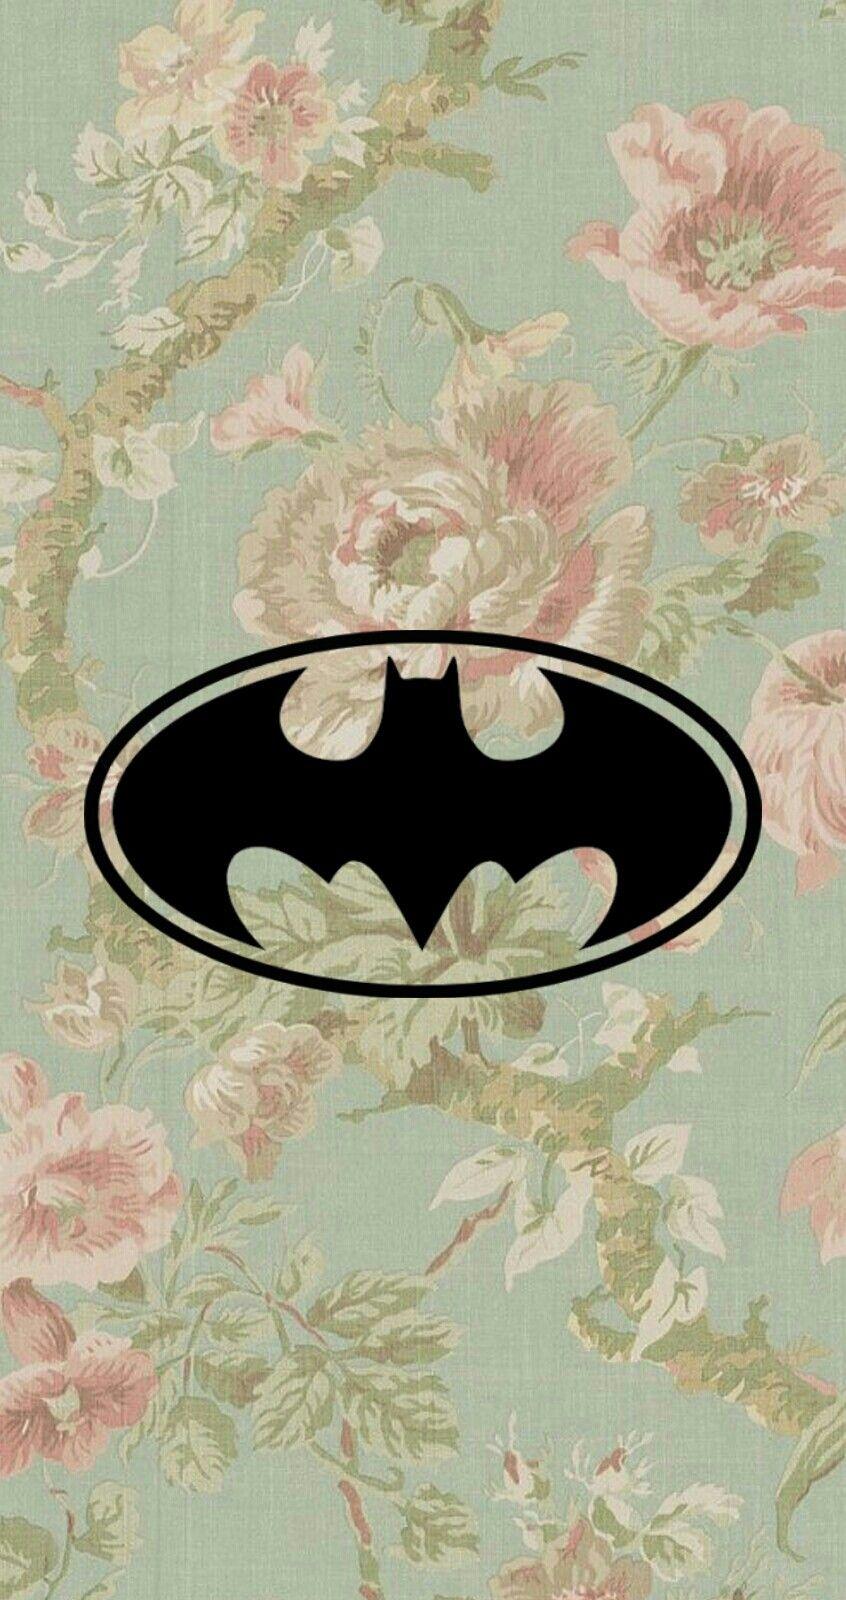 I'm Batman! Heuheu, um wallpaper que eu editei com a logo do Batman